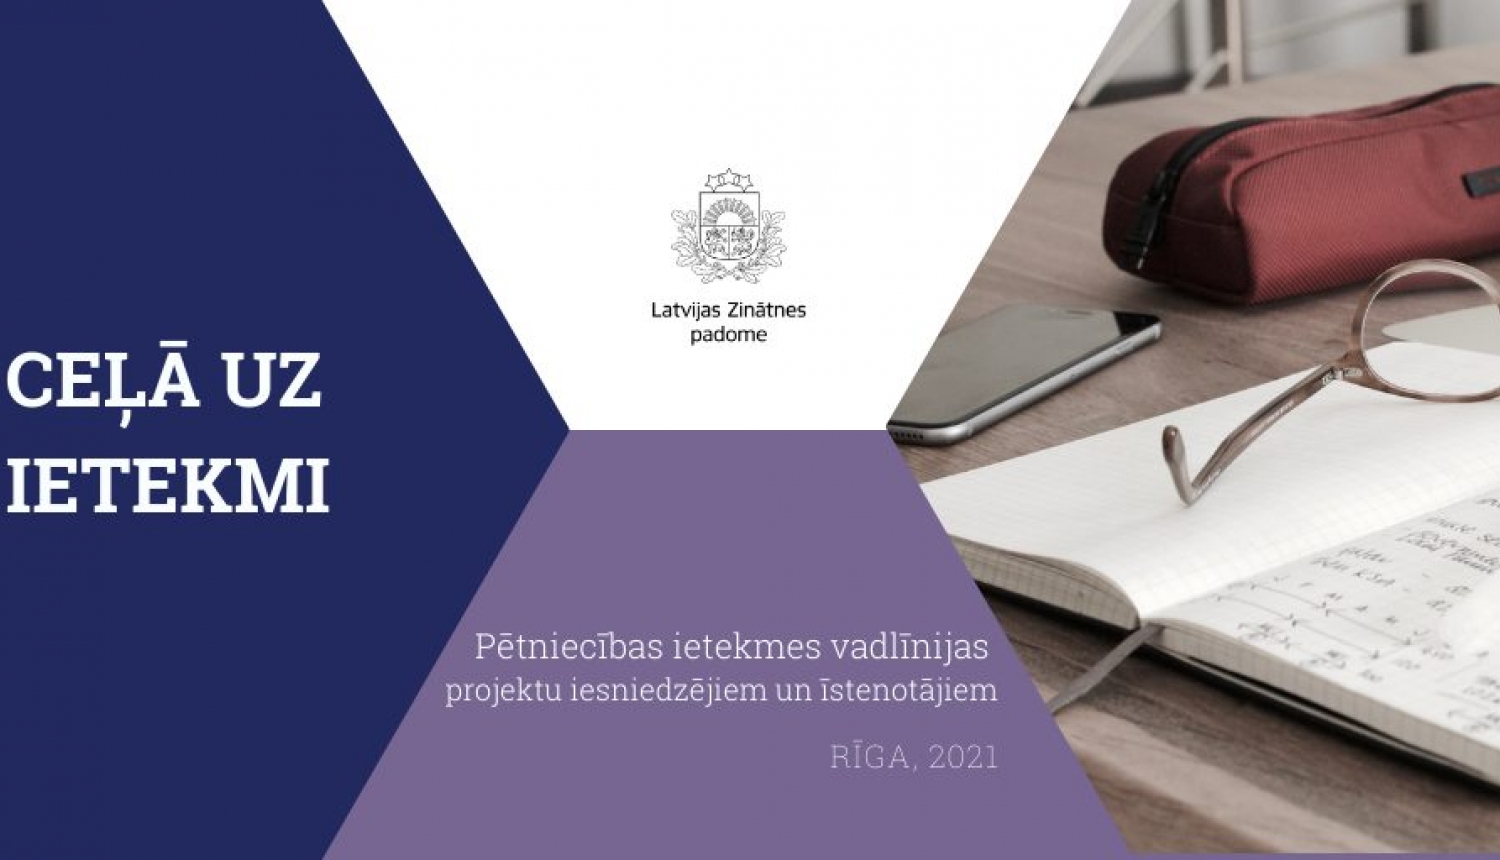 Latvijas Zinātnes padome publicē pētniecības ietekmes vadlīnijas projektu iesniedzējiem un īstenotājiem “Ceļā uz ietekmi”